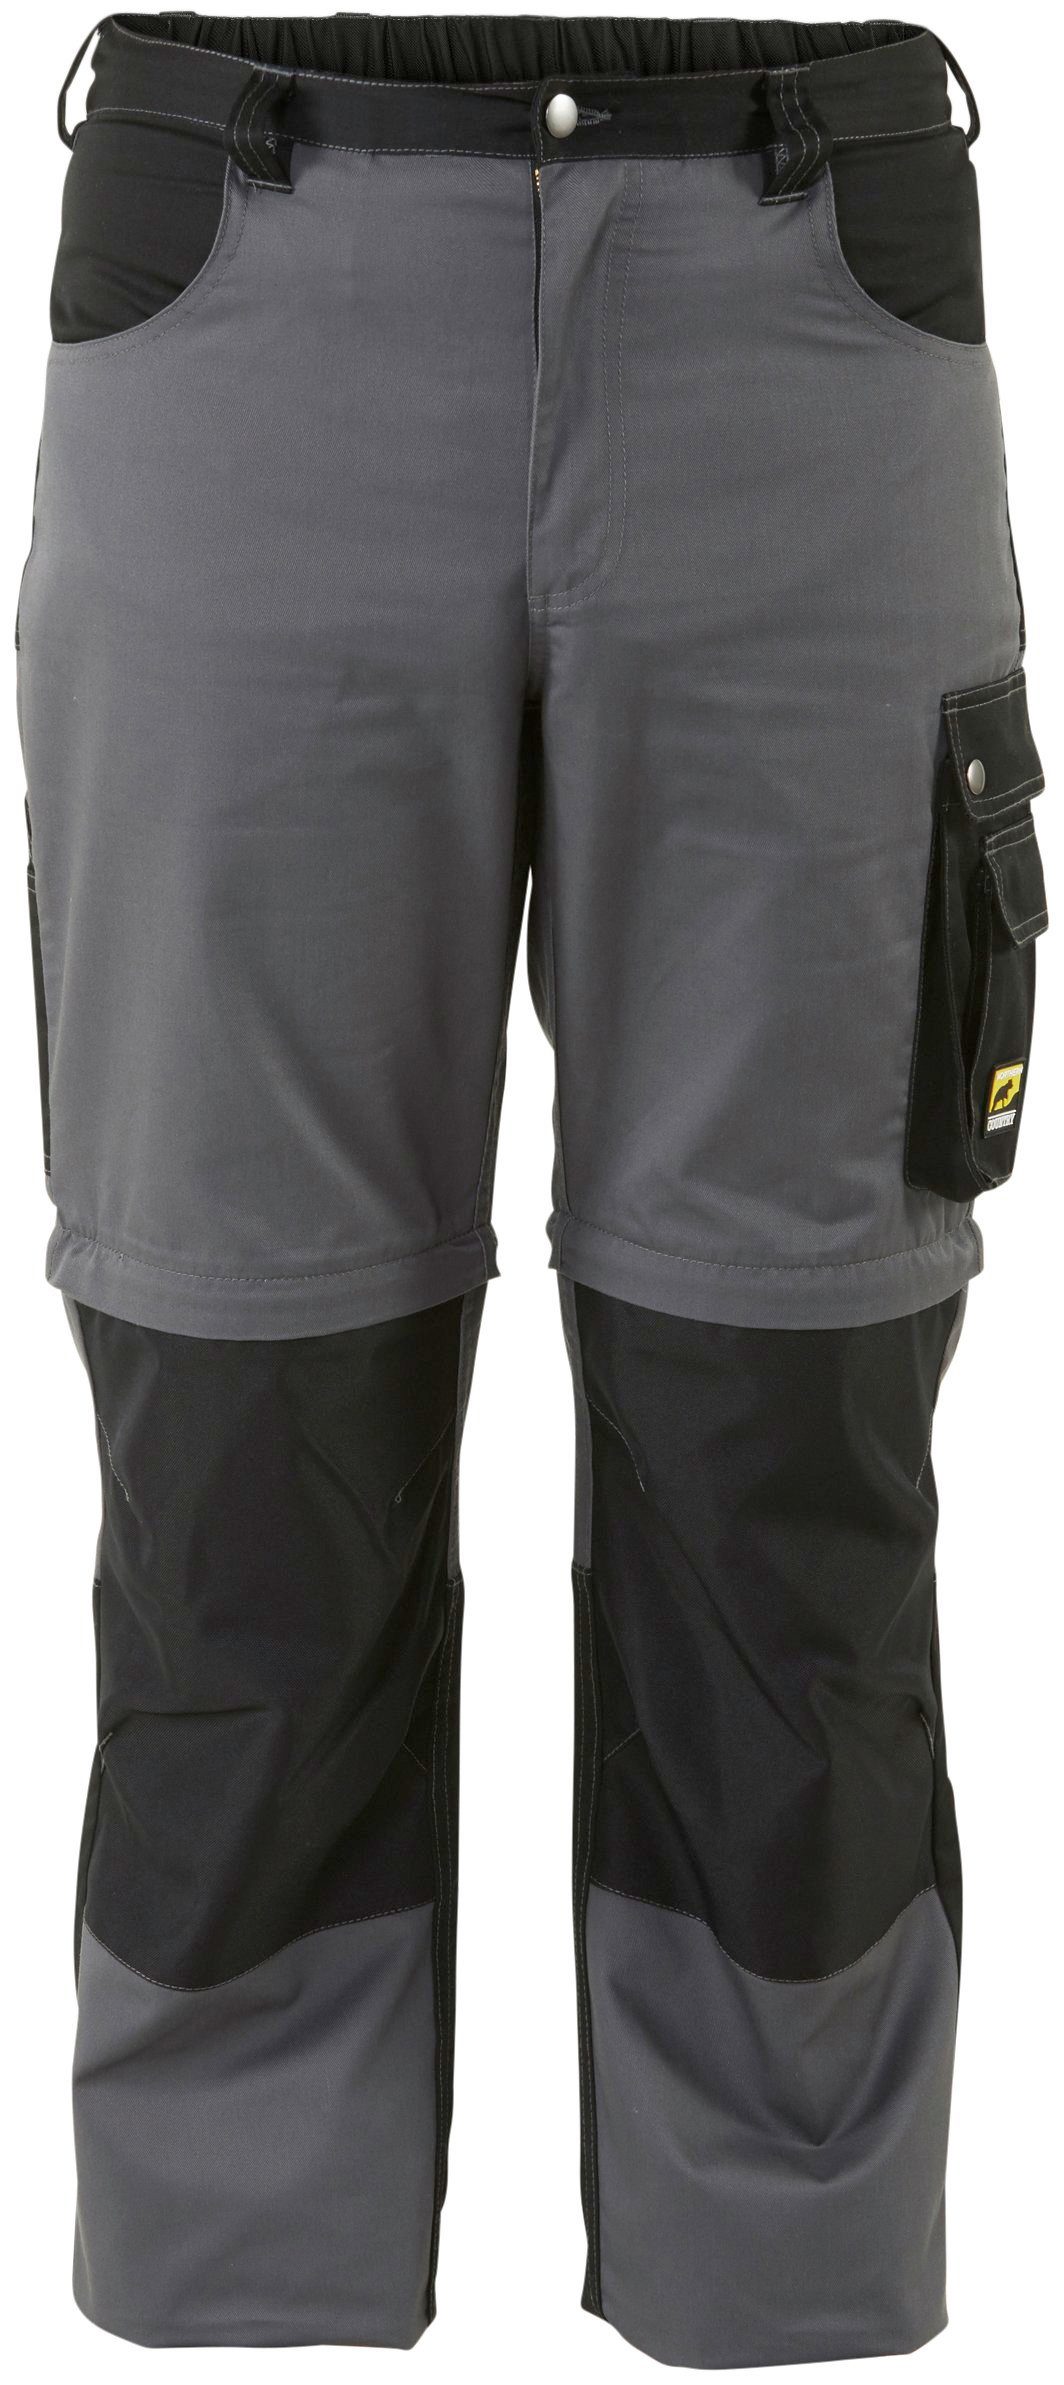 Northern Country Arbeitshose Worker (verstärkter Kniebereich, Beinverlängerung möglich, 8 Taschen) mit Zipp-off Funktion: Shorts und lange Arbeitshose in einem